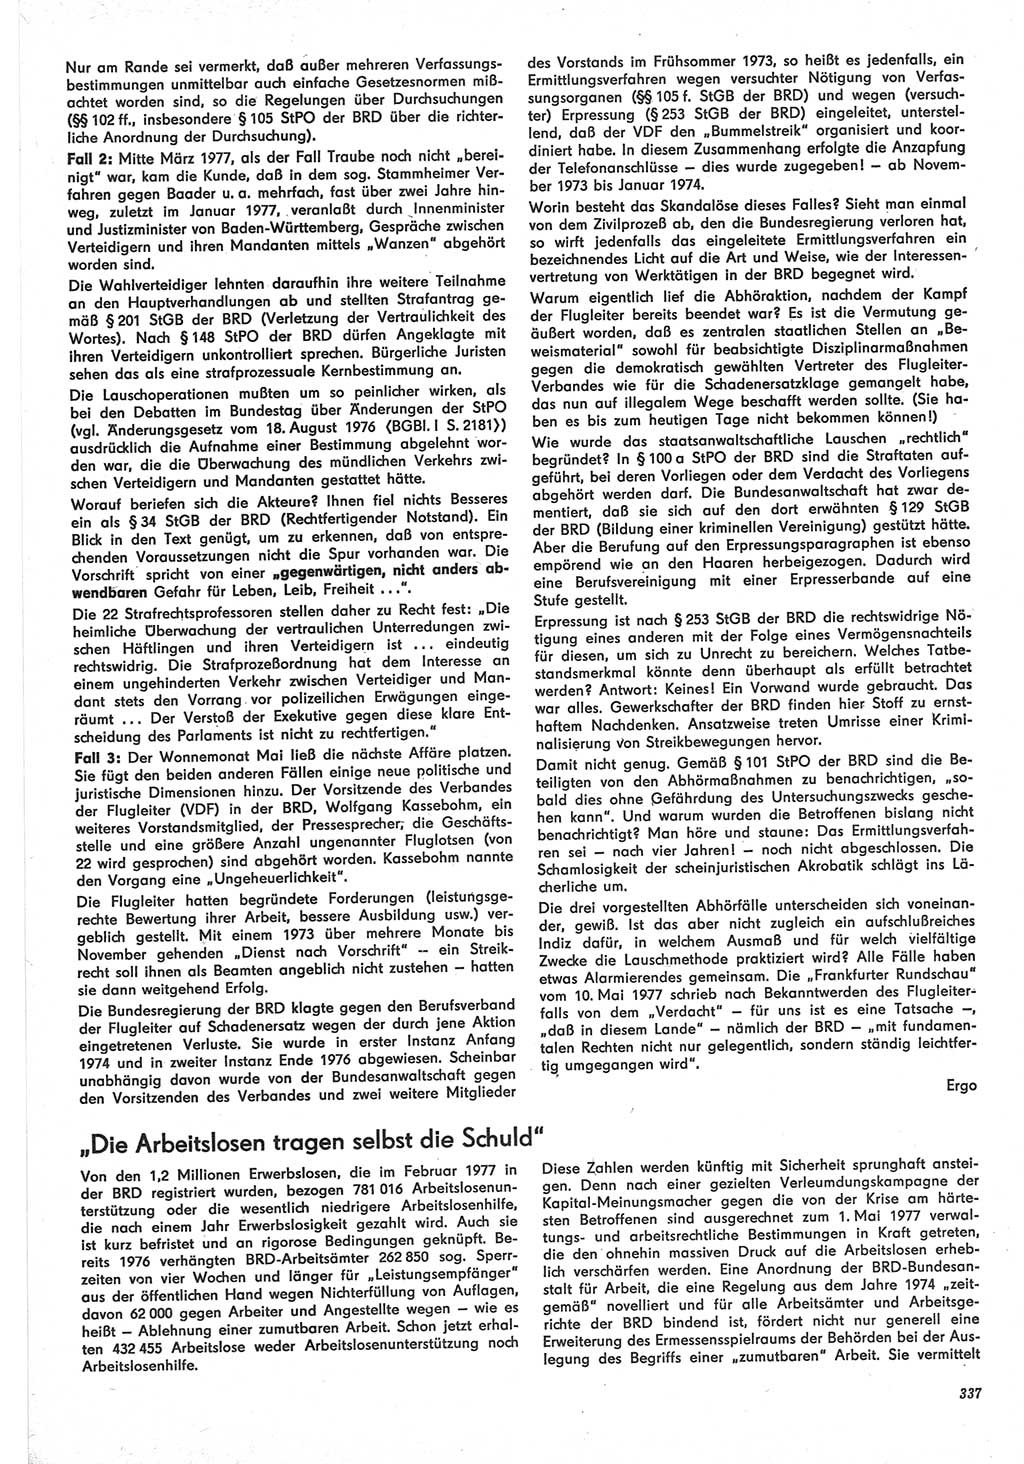 Neue Justiz (NJ), Zeitschrift für Recht und Rechtswissenschaft-Zeitschrift, sozialistisches Recht und Gesetzlichkeit, 31. Jahrgang 1977, Seite 337 (NJ DDR 1977, S. 337)